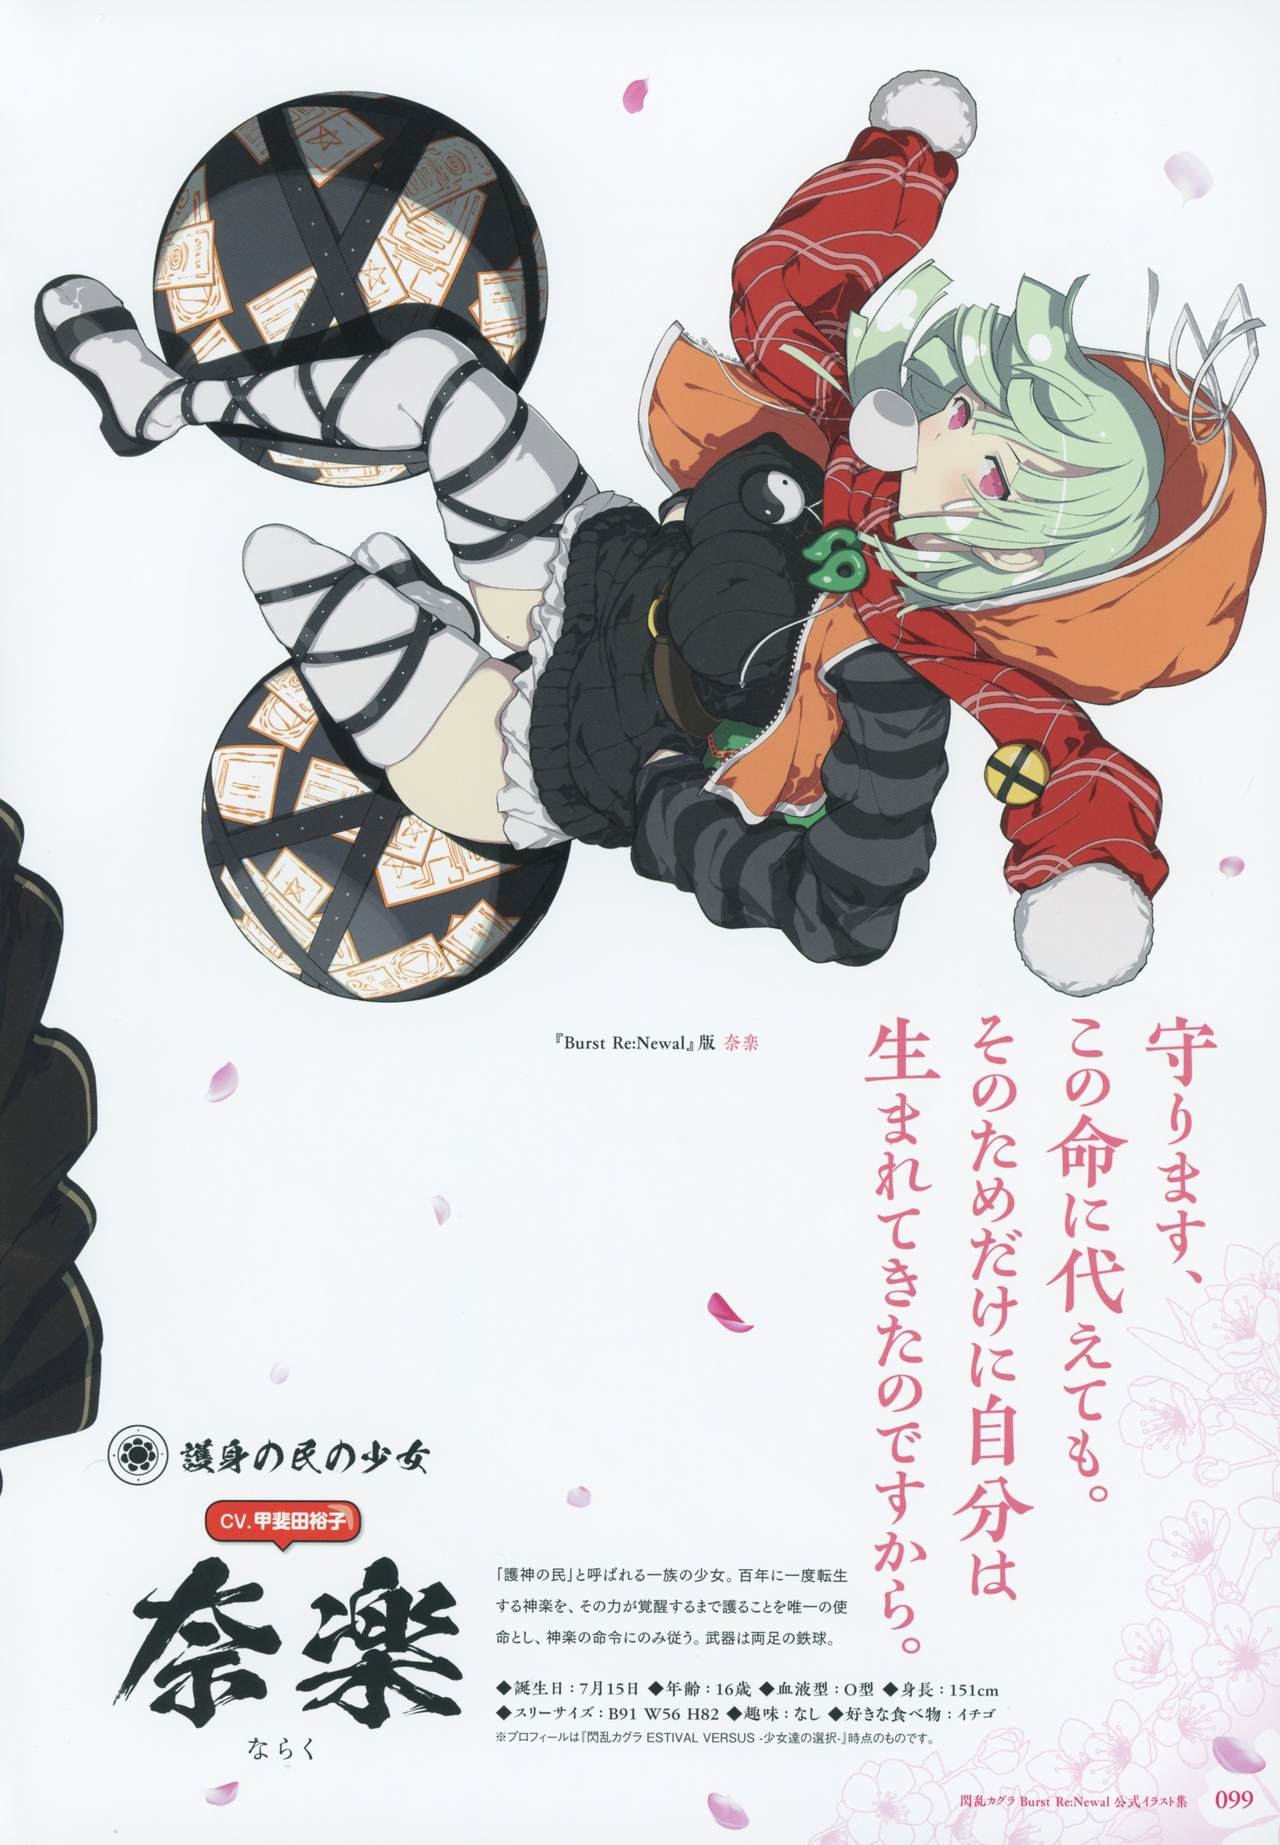 Senran Kagura Burst Re:Newal Koushiki Illust Shuu 99